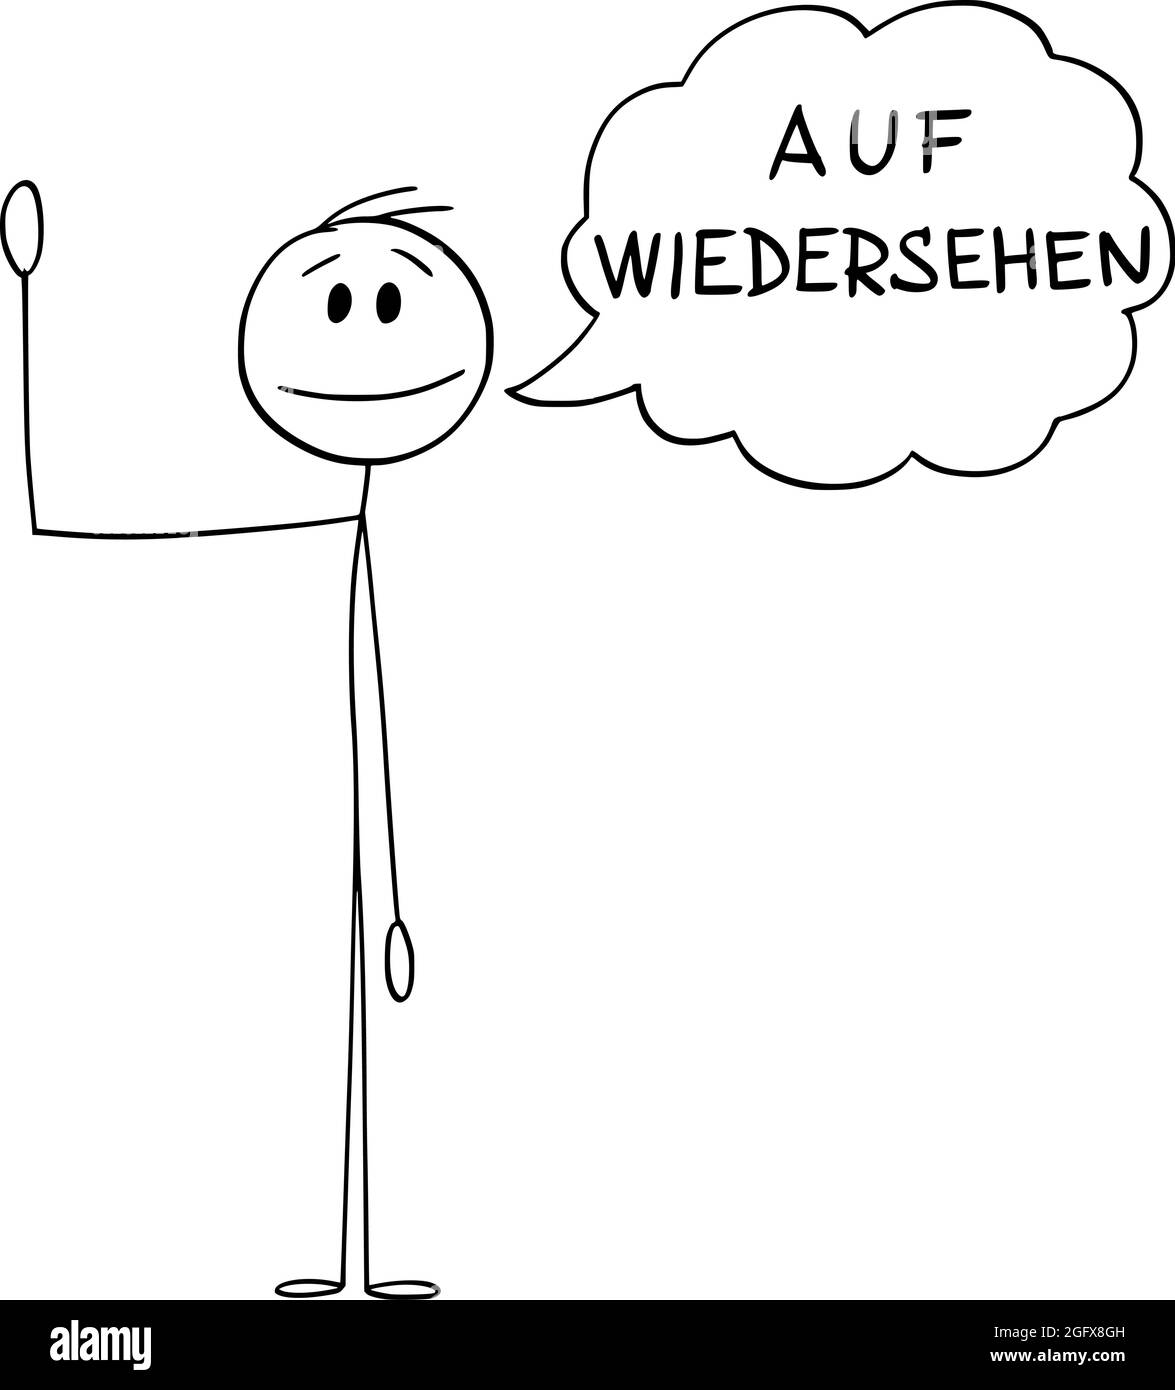 Person oder Mann winkt mit der Hand und sagt Gruß auf Wiedersehen auf Deutsch, Vektor Cartoon Stick Figur Illustration Stock Vektor